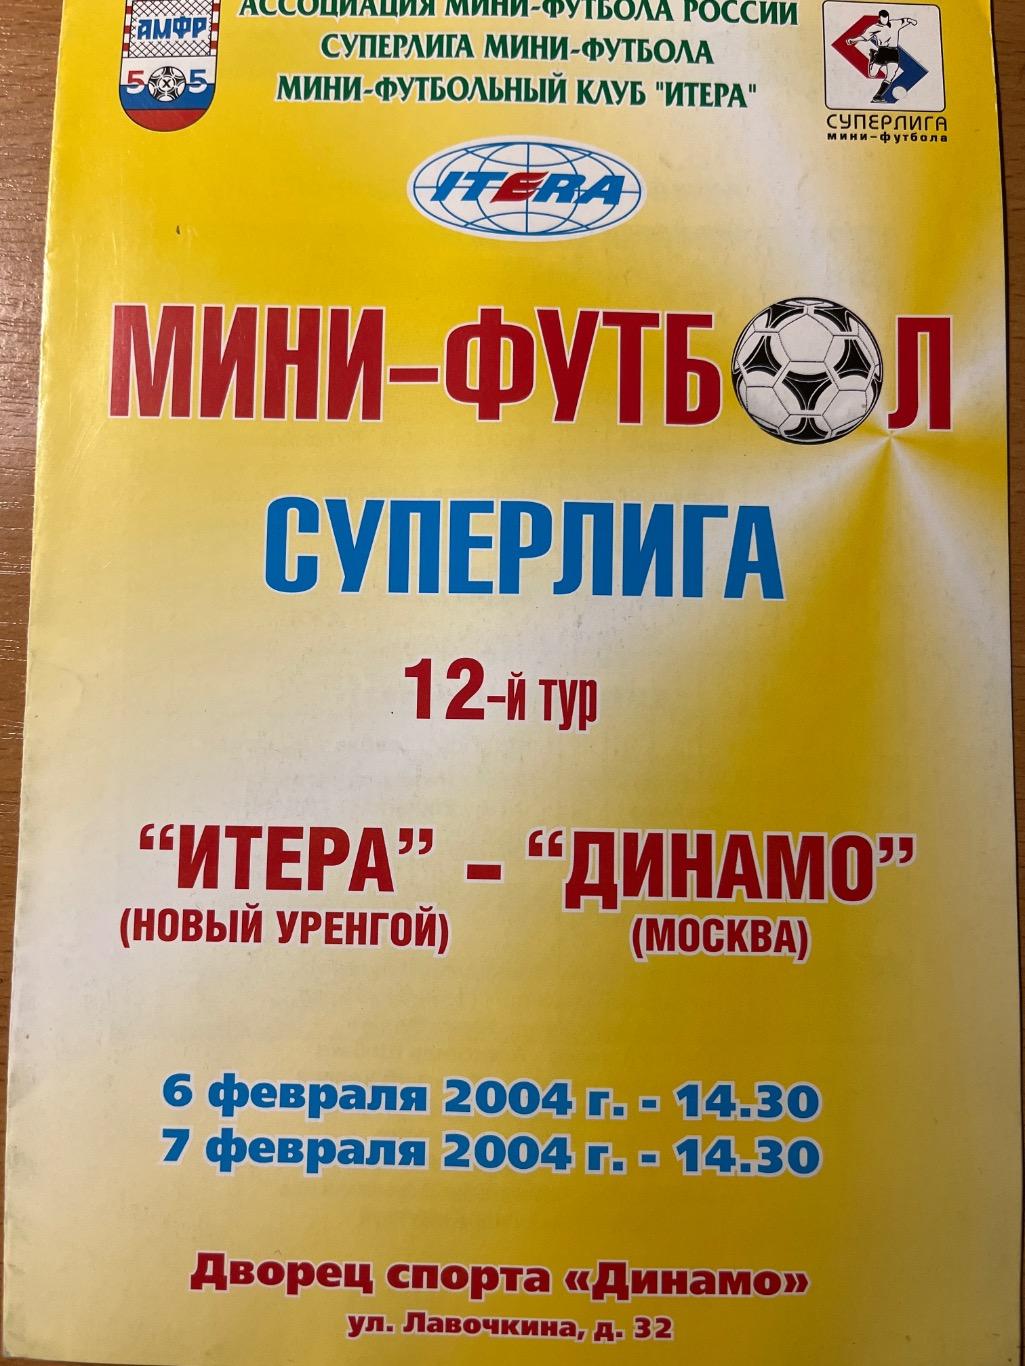 Итерра Новый Уренгой - Динамо Москва 6-7.02.2004